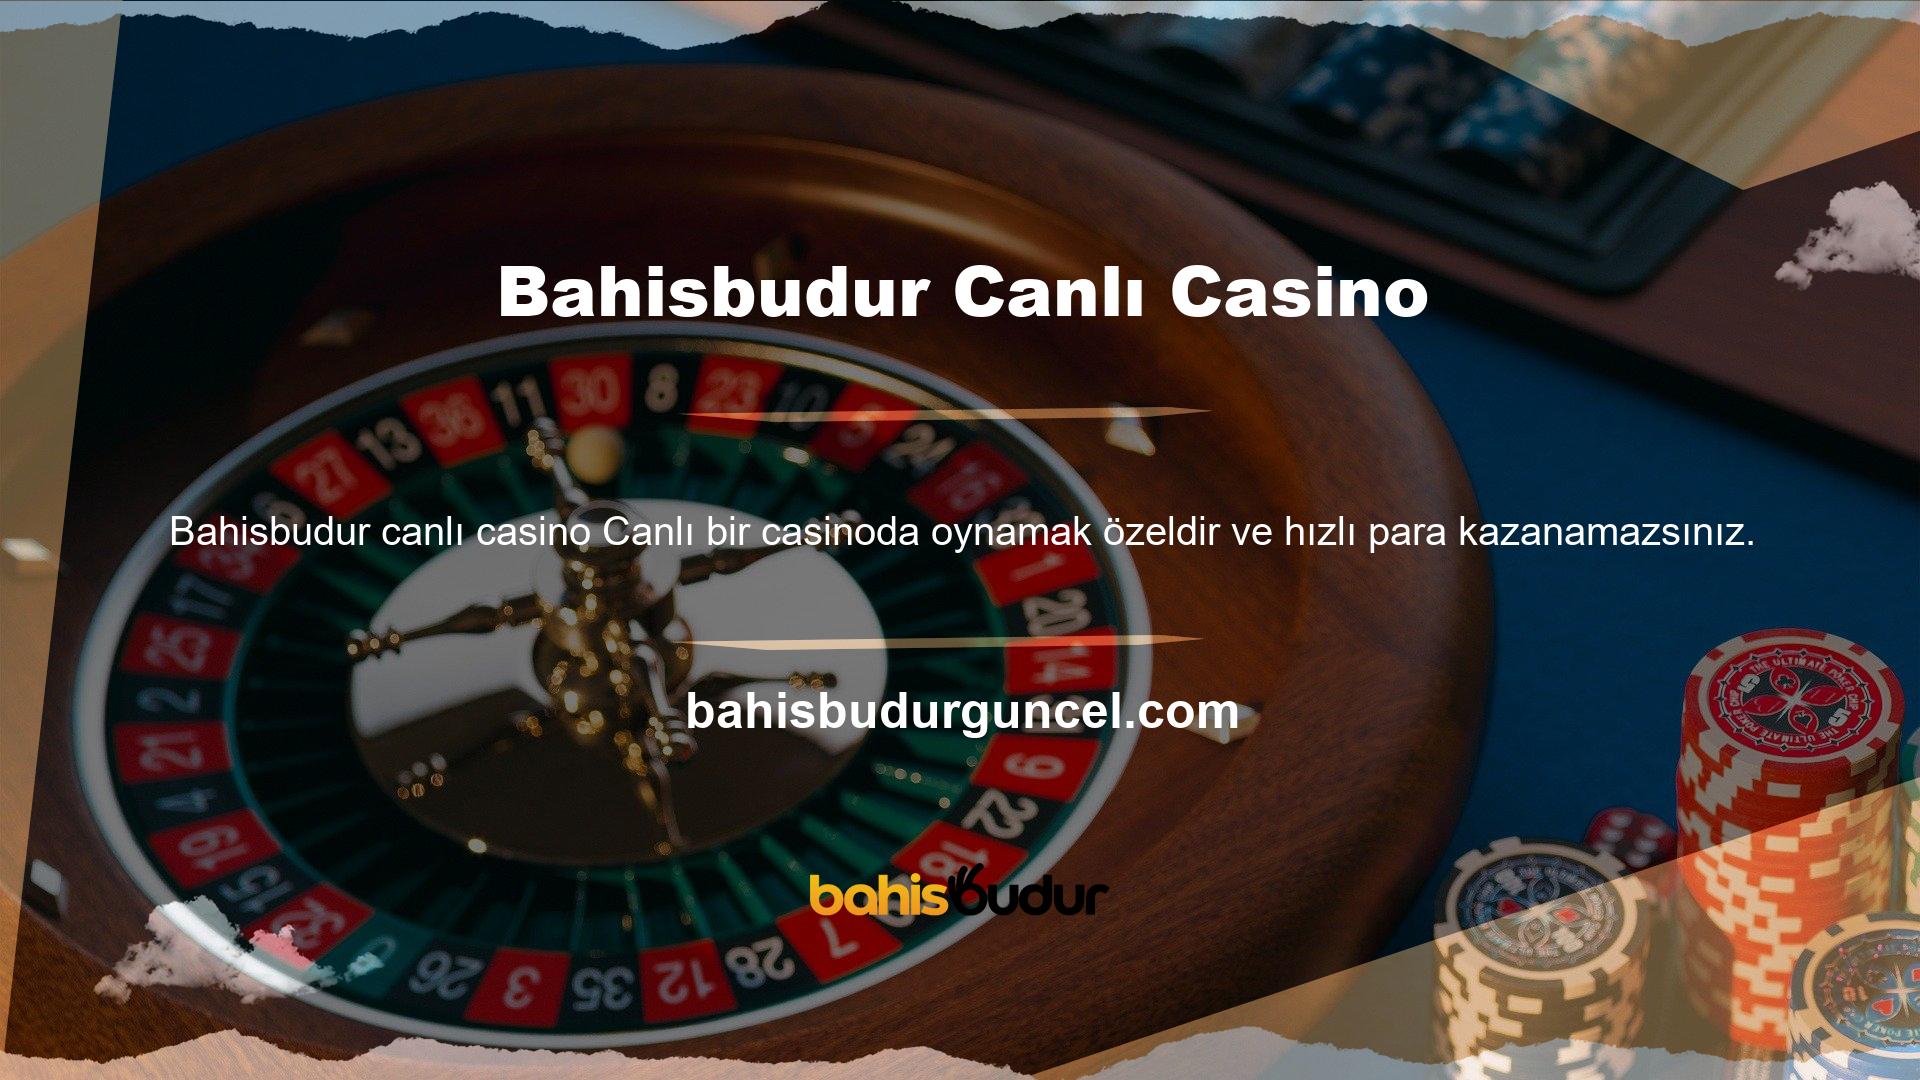 Türkiye'deki yasadışı casino siteleri, kayıplarınızı karşılamak için ciddi promosyon çekleri ekleyerek hesabınızı geliştirebilir